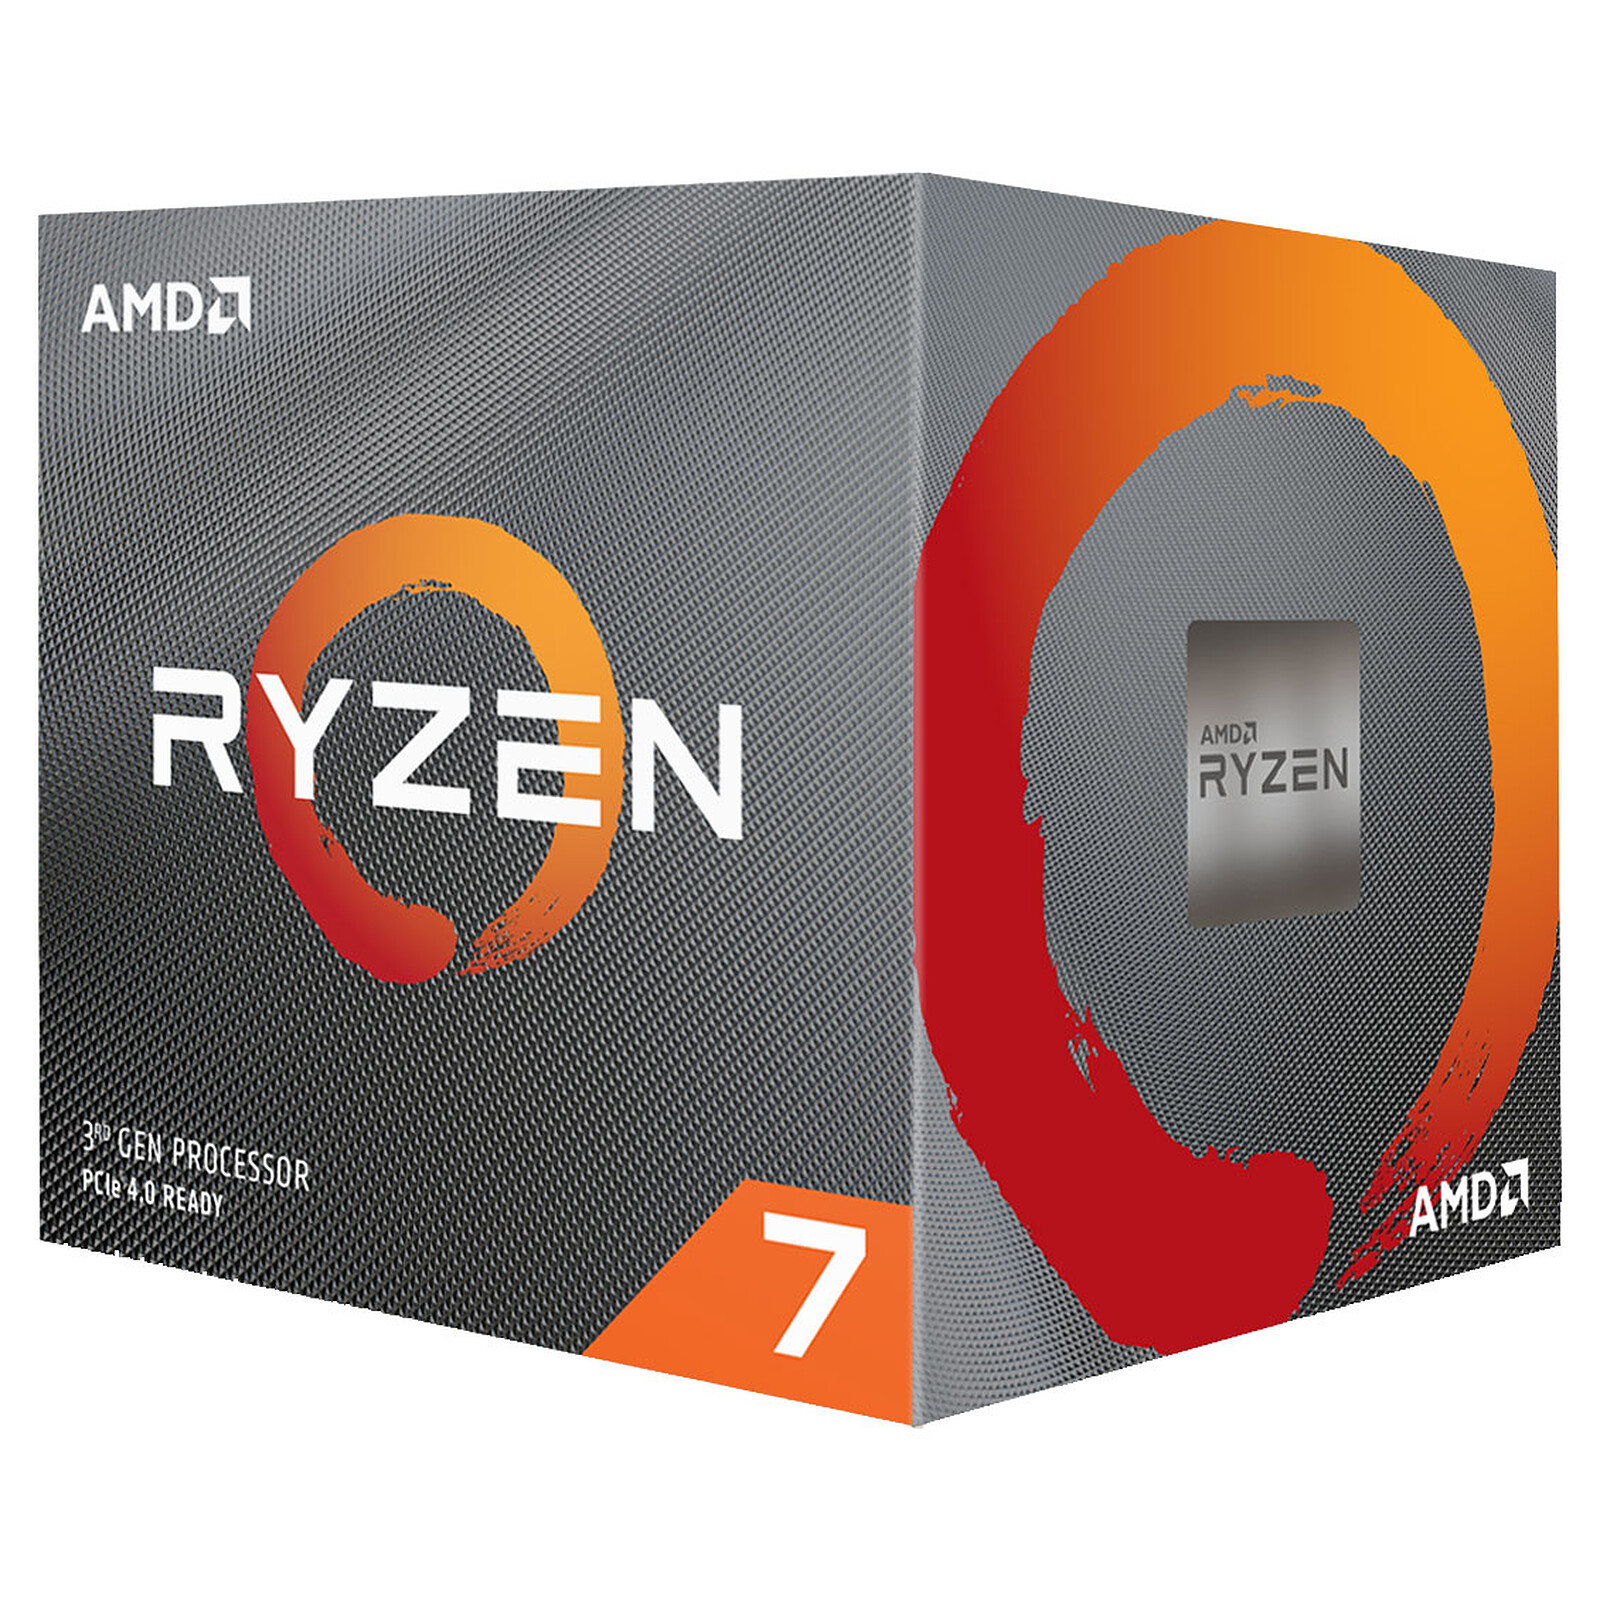 【保証有】AMD Ryzen 7 3700X with Wraith Prism